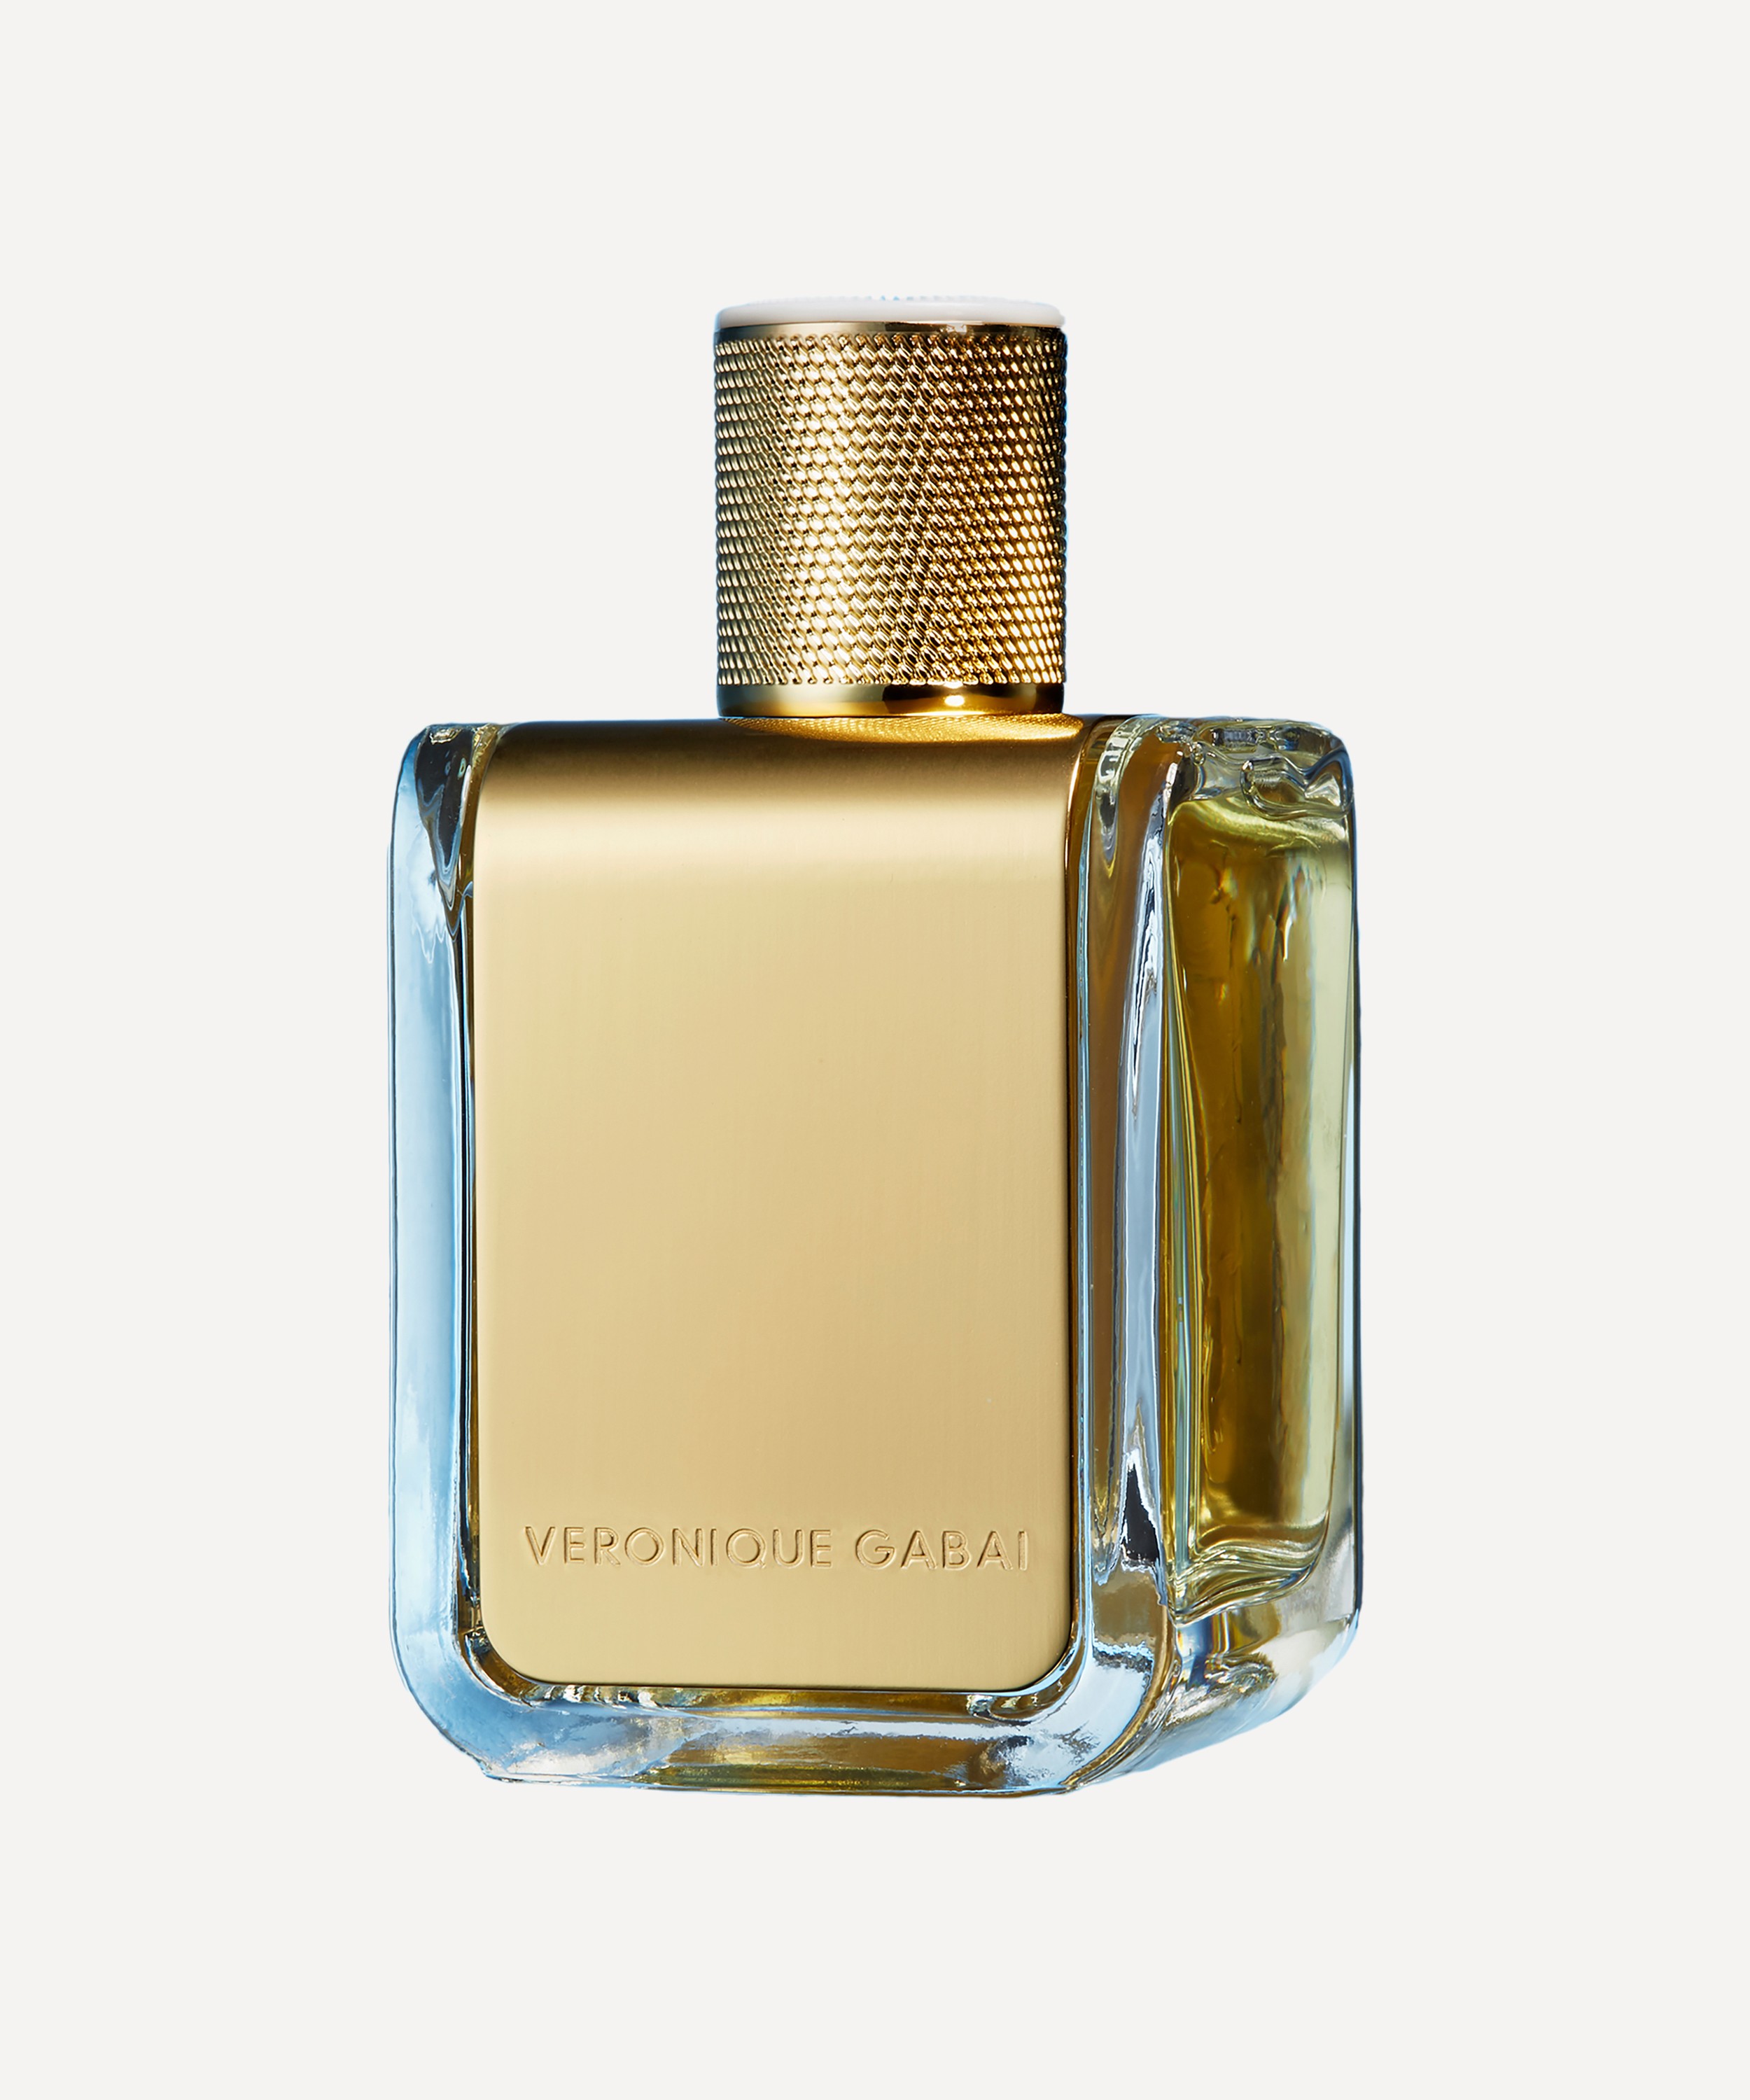 Veronique Gabai - Vert Désir Eau de Parfum 85ml